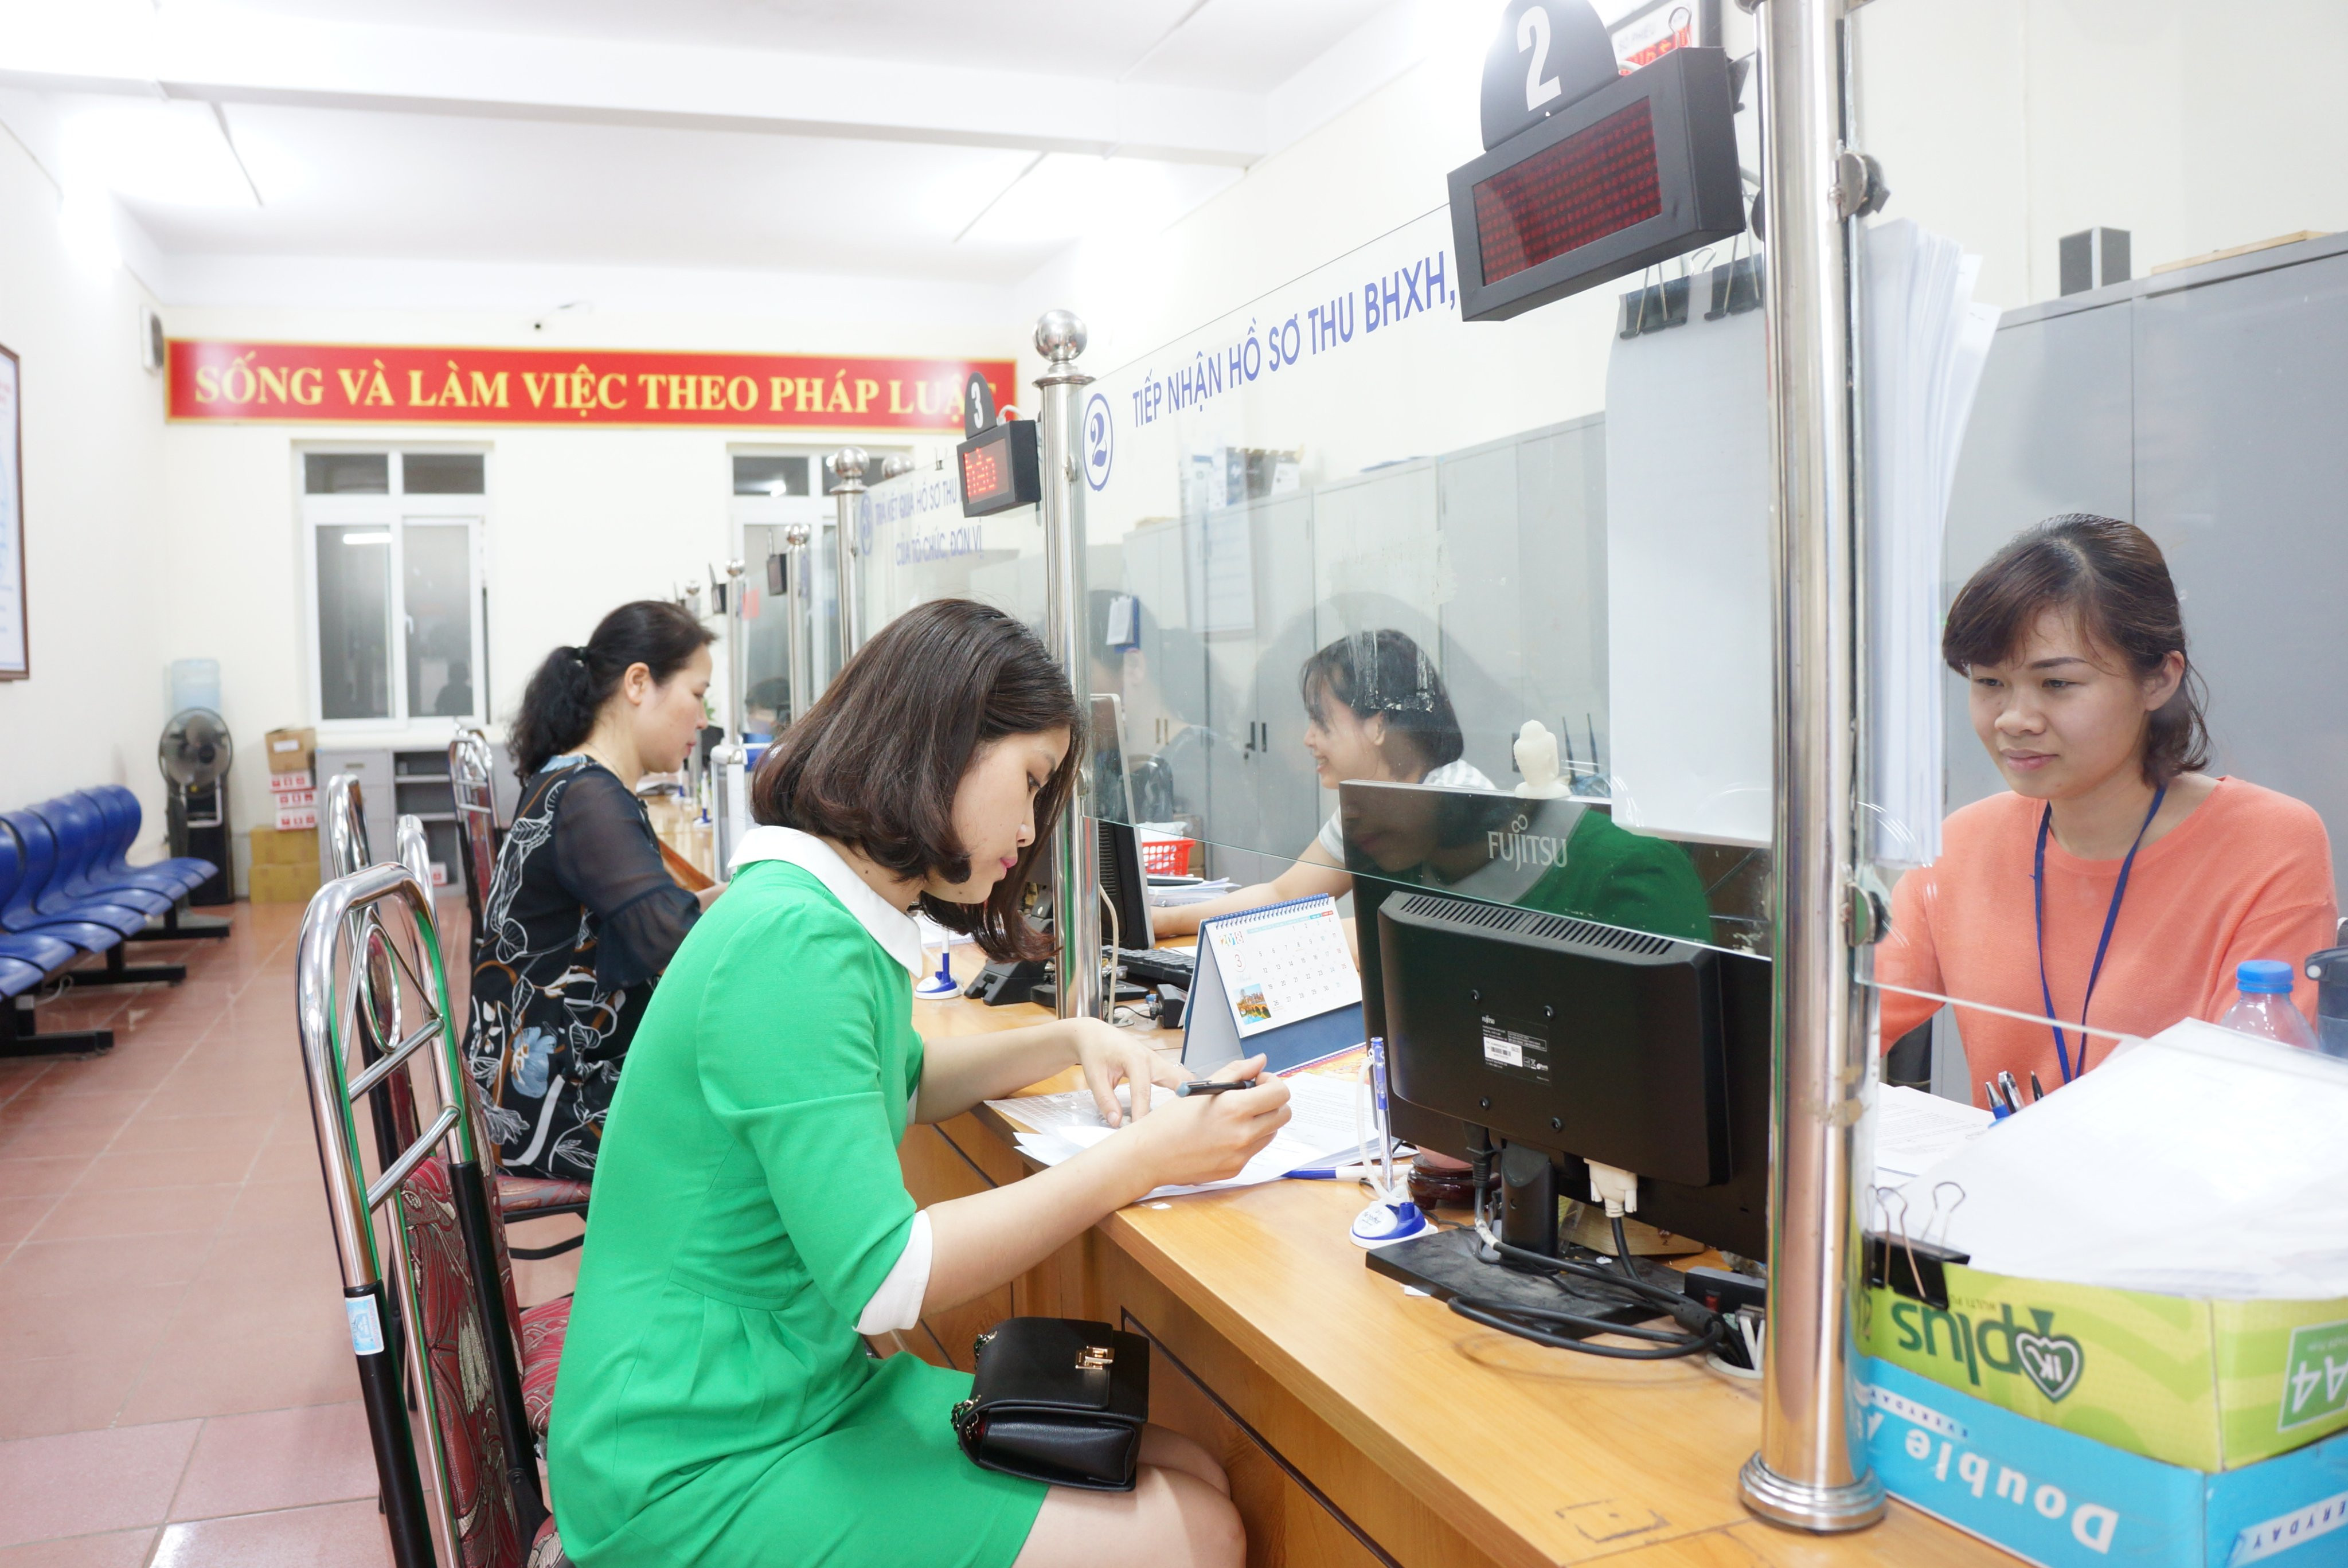 Bộ TTHC của Ngành BHXH Việt Nam được cắt giảm từ 114 TTHC (năm 2015) đến nay còn 25 TTHC, giảm đáng kể thời gian, chi phí cho doanh nghiệp và người dân